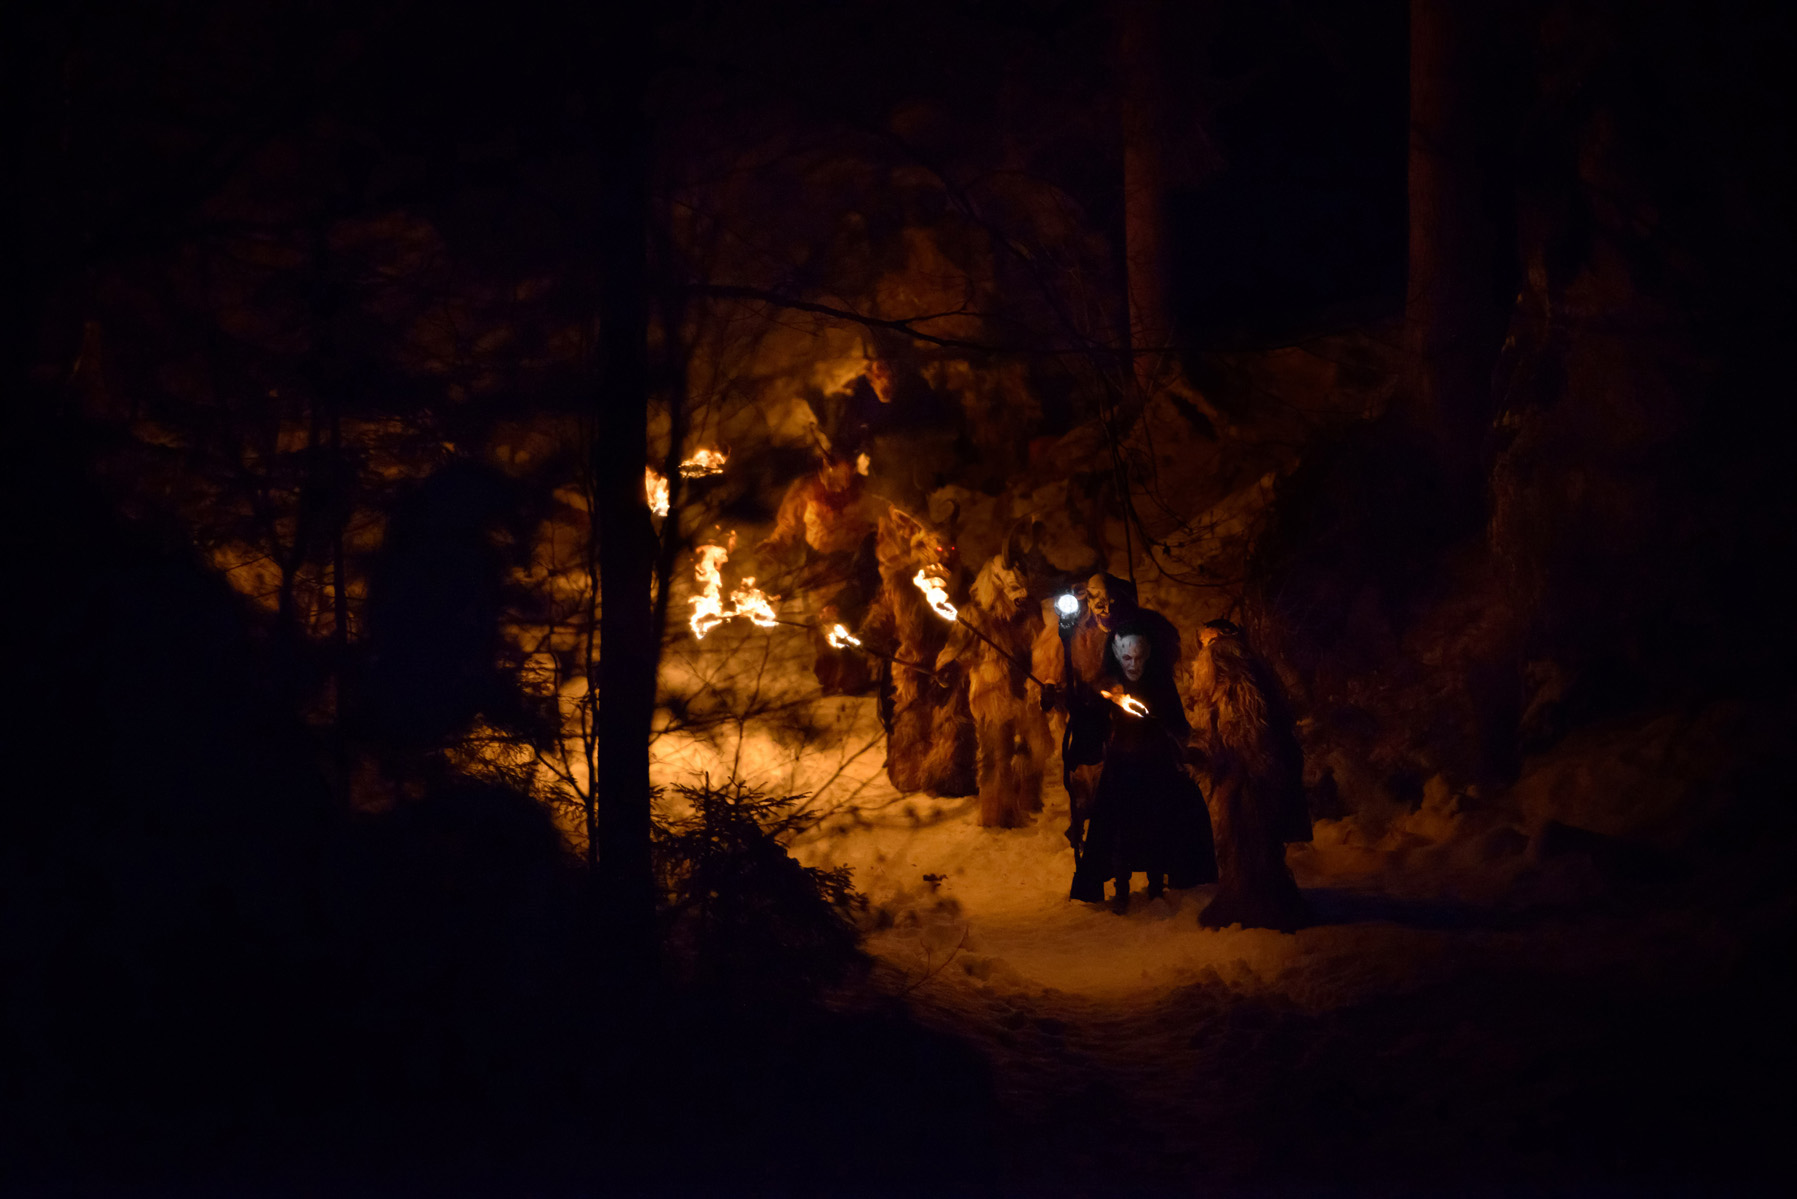 gruppo di krampus riposa nel bosco alla luce delle fiaccole